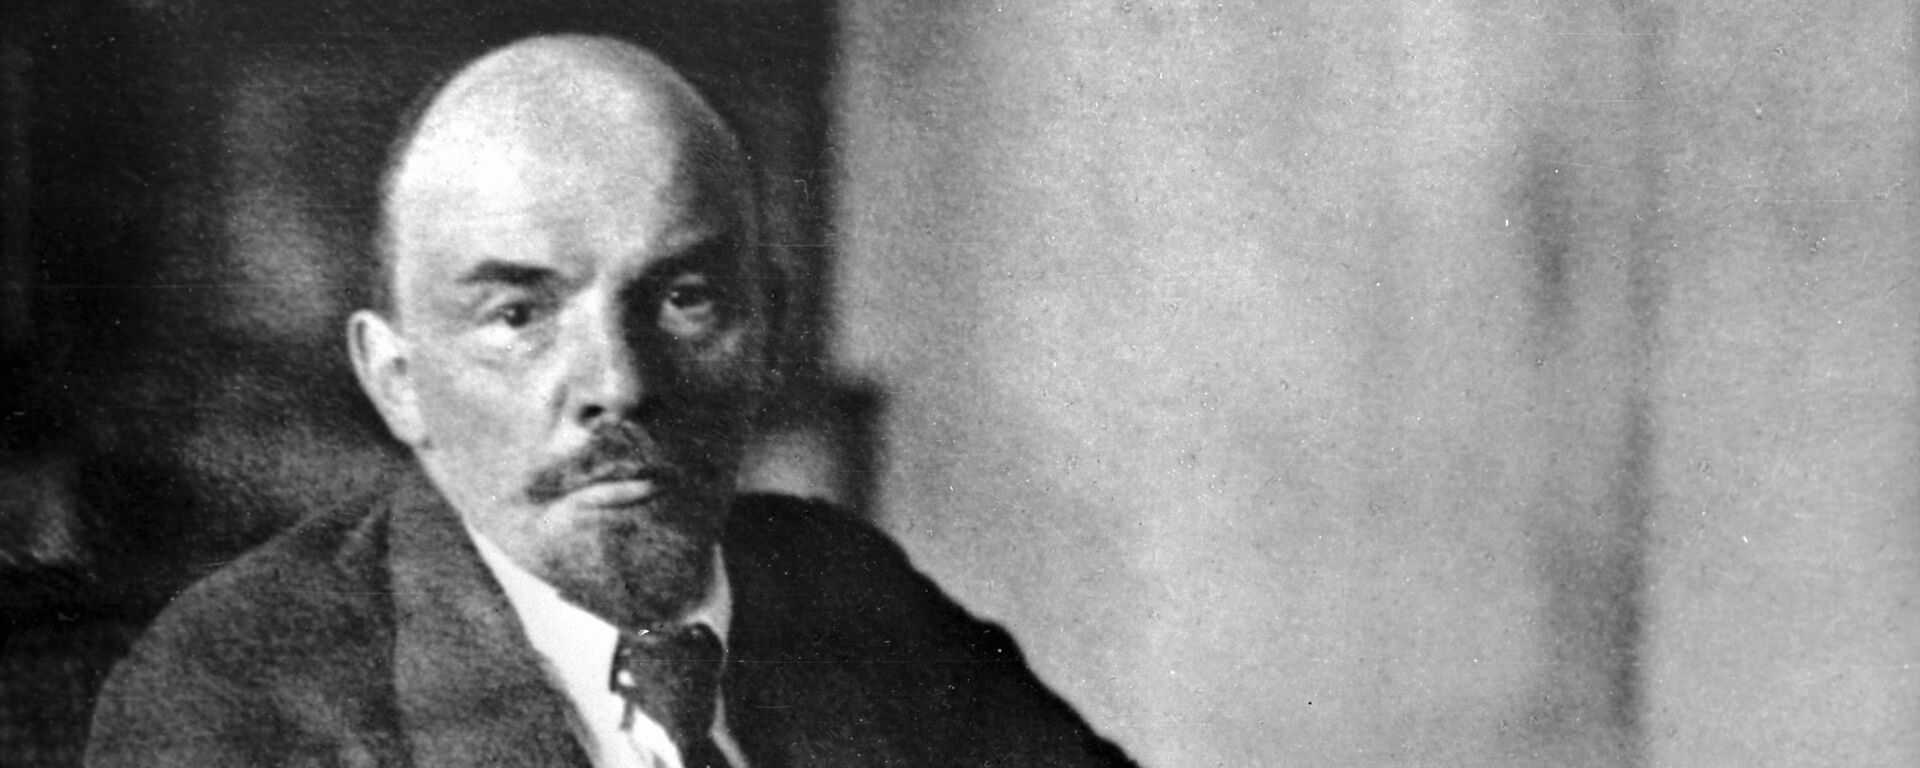 Vladímir Lenin, líder revolucionário - Sputnik Mundo, 1920, 21.01.2021